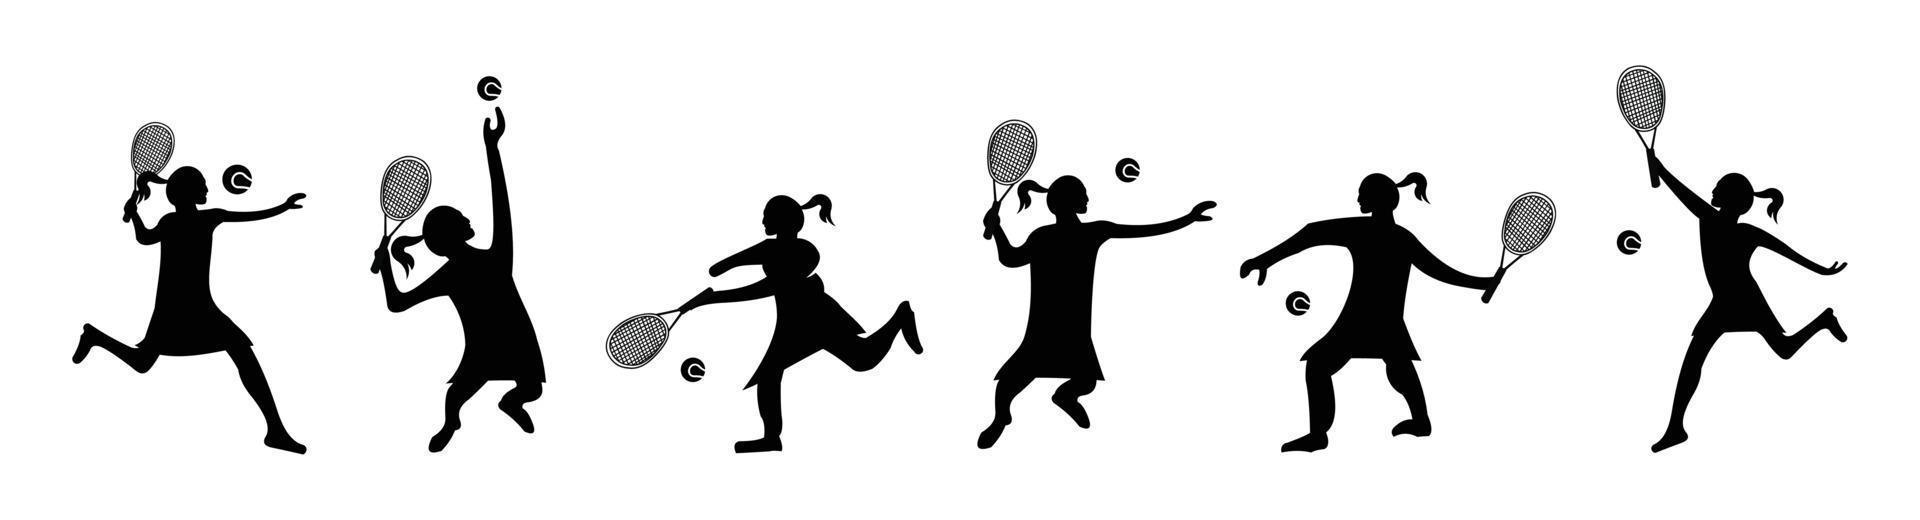 set di giocare a tennis uomini e donne silhouette vettoriali, giocatori di tennis su sfondo bianco e nero vettore